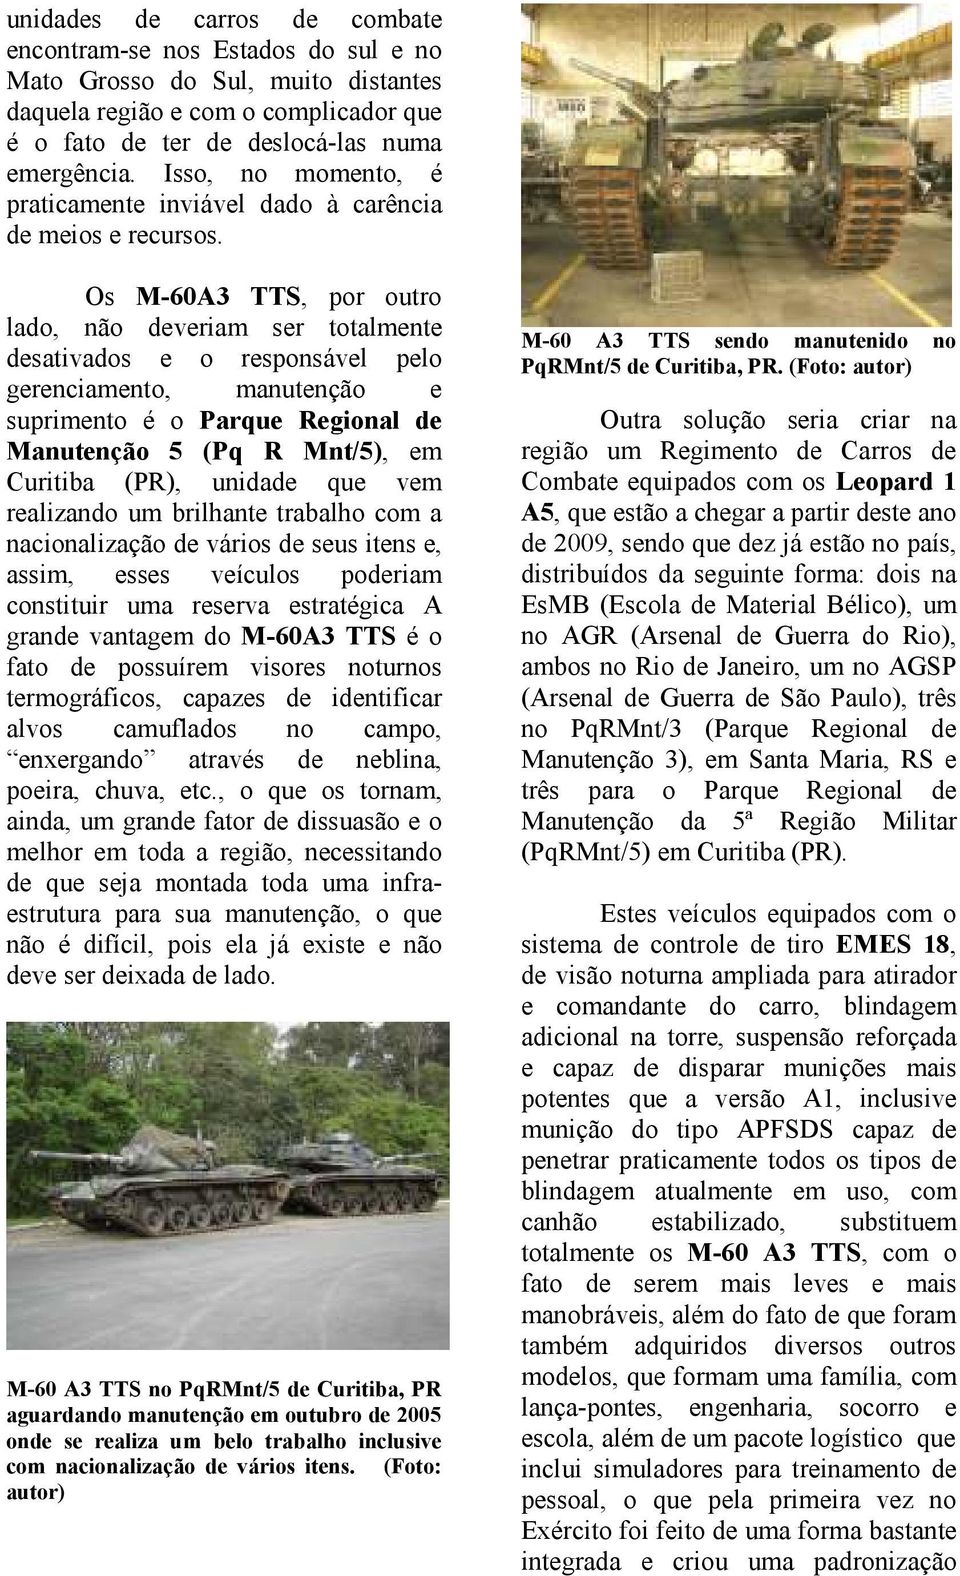 Os M-60A3 TTS, por outro lado, não deveriam ser totalmente desativados e o responsável pelo gerenciamento, manutenção e suprimento é o Parque Regional de Manutenção 5 (Pq R Mnt/5), em Curitiba (PR),